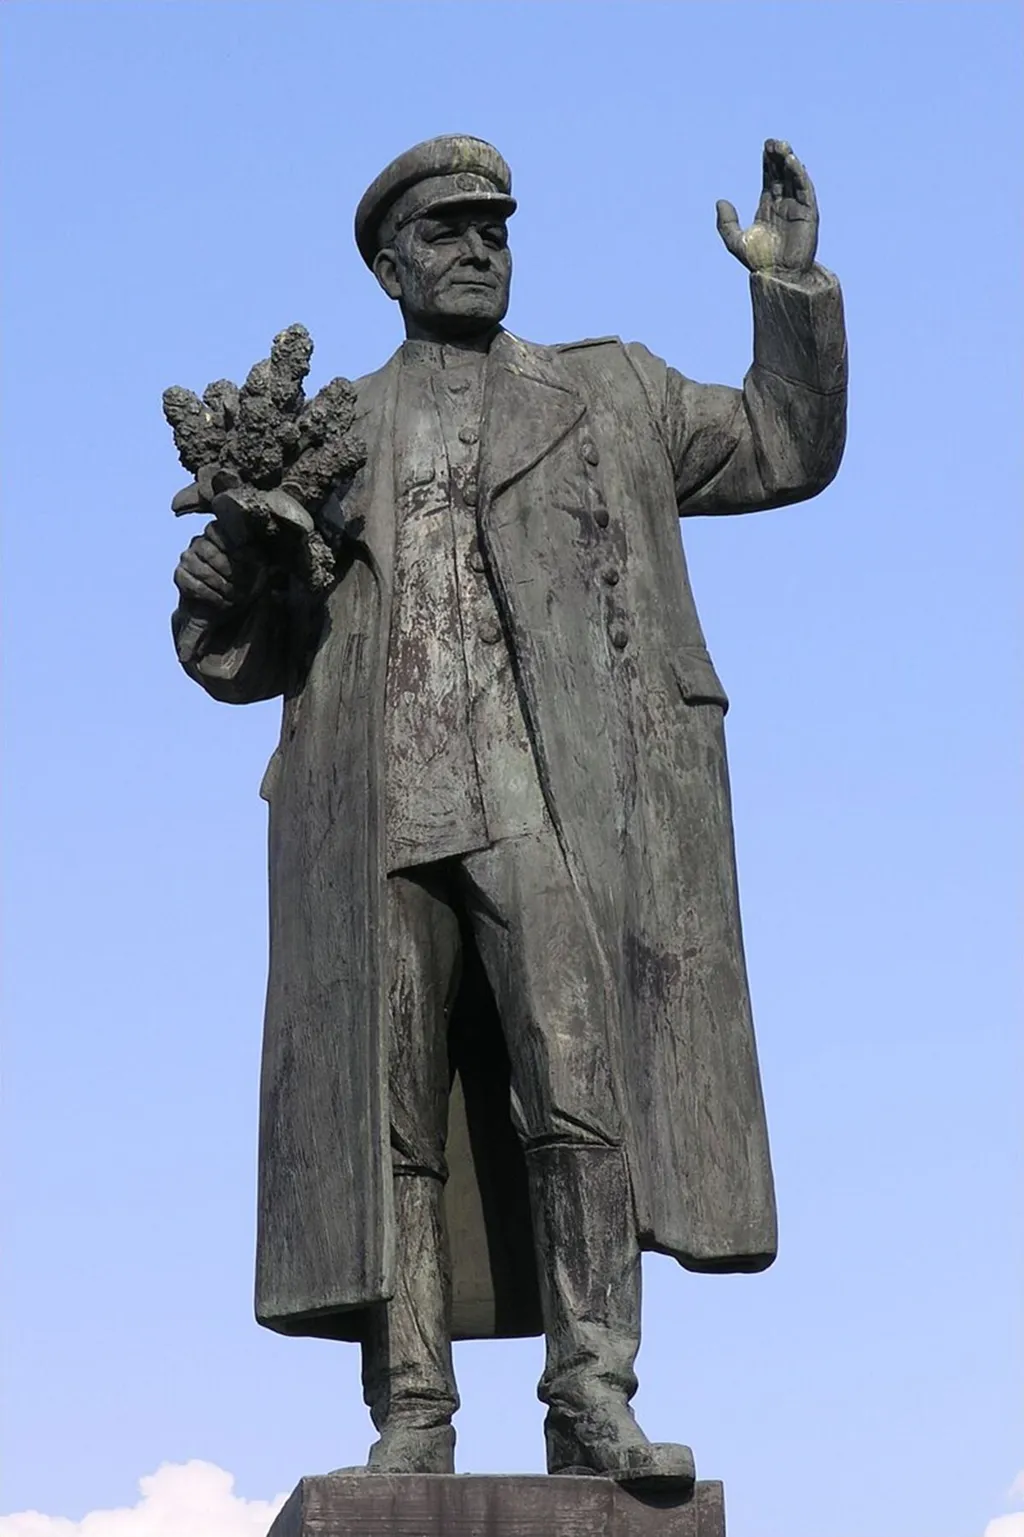 Socha generála I. S. Koněva stála na náměstí Interbrigády v Bubenči. Byla odhalena 9. května 1980 a je dílem sochaře Zdeňka Krybuse a architekta Vratislava Růžičky. Praha 6 odstranila sochu v dubnu 2020